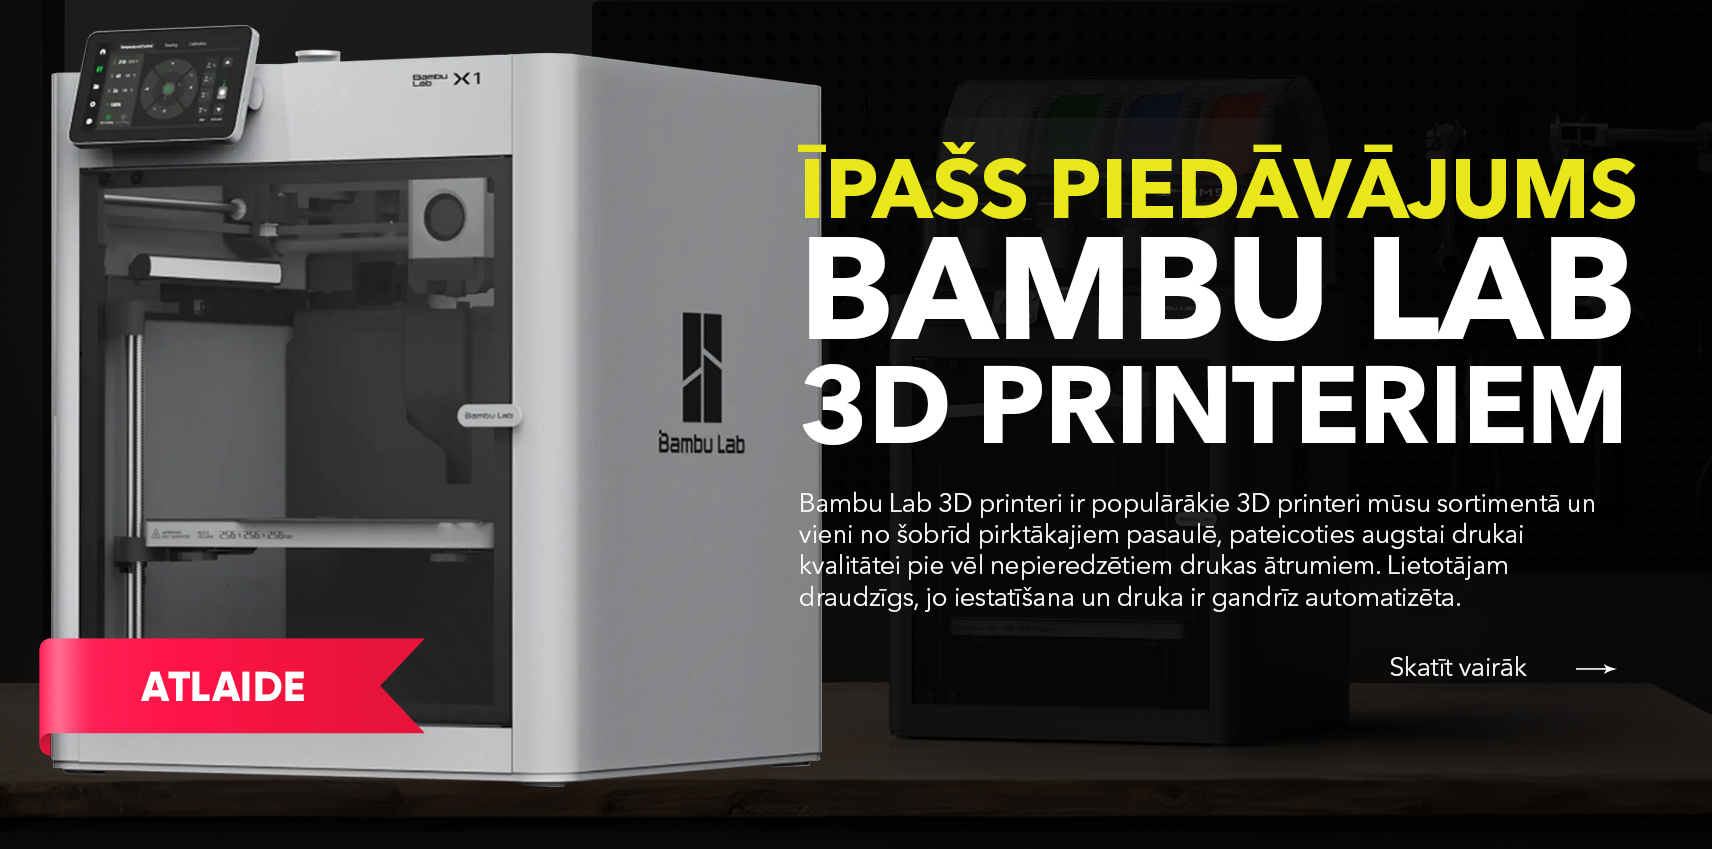 Īpašs piedāvājums Bambu Lab 3D printeriem! Akcijas periodā zemāka cena norādītajiem Bambu Lab 3D printeru modeļiem - P1P un X1 Carbon.